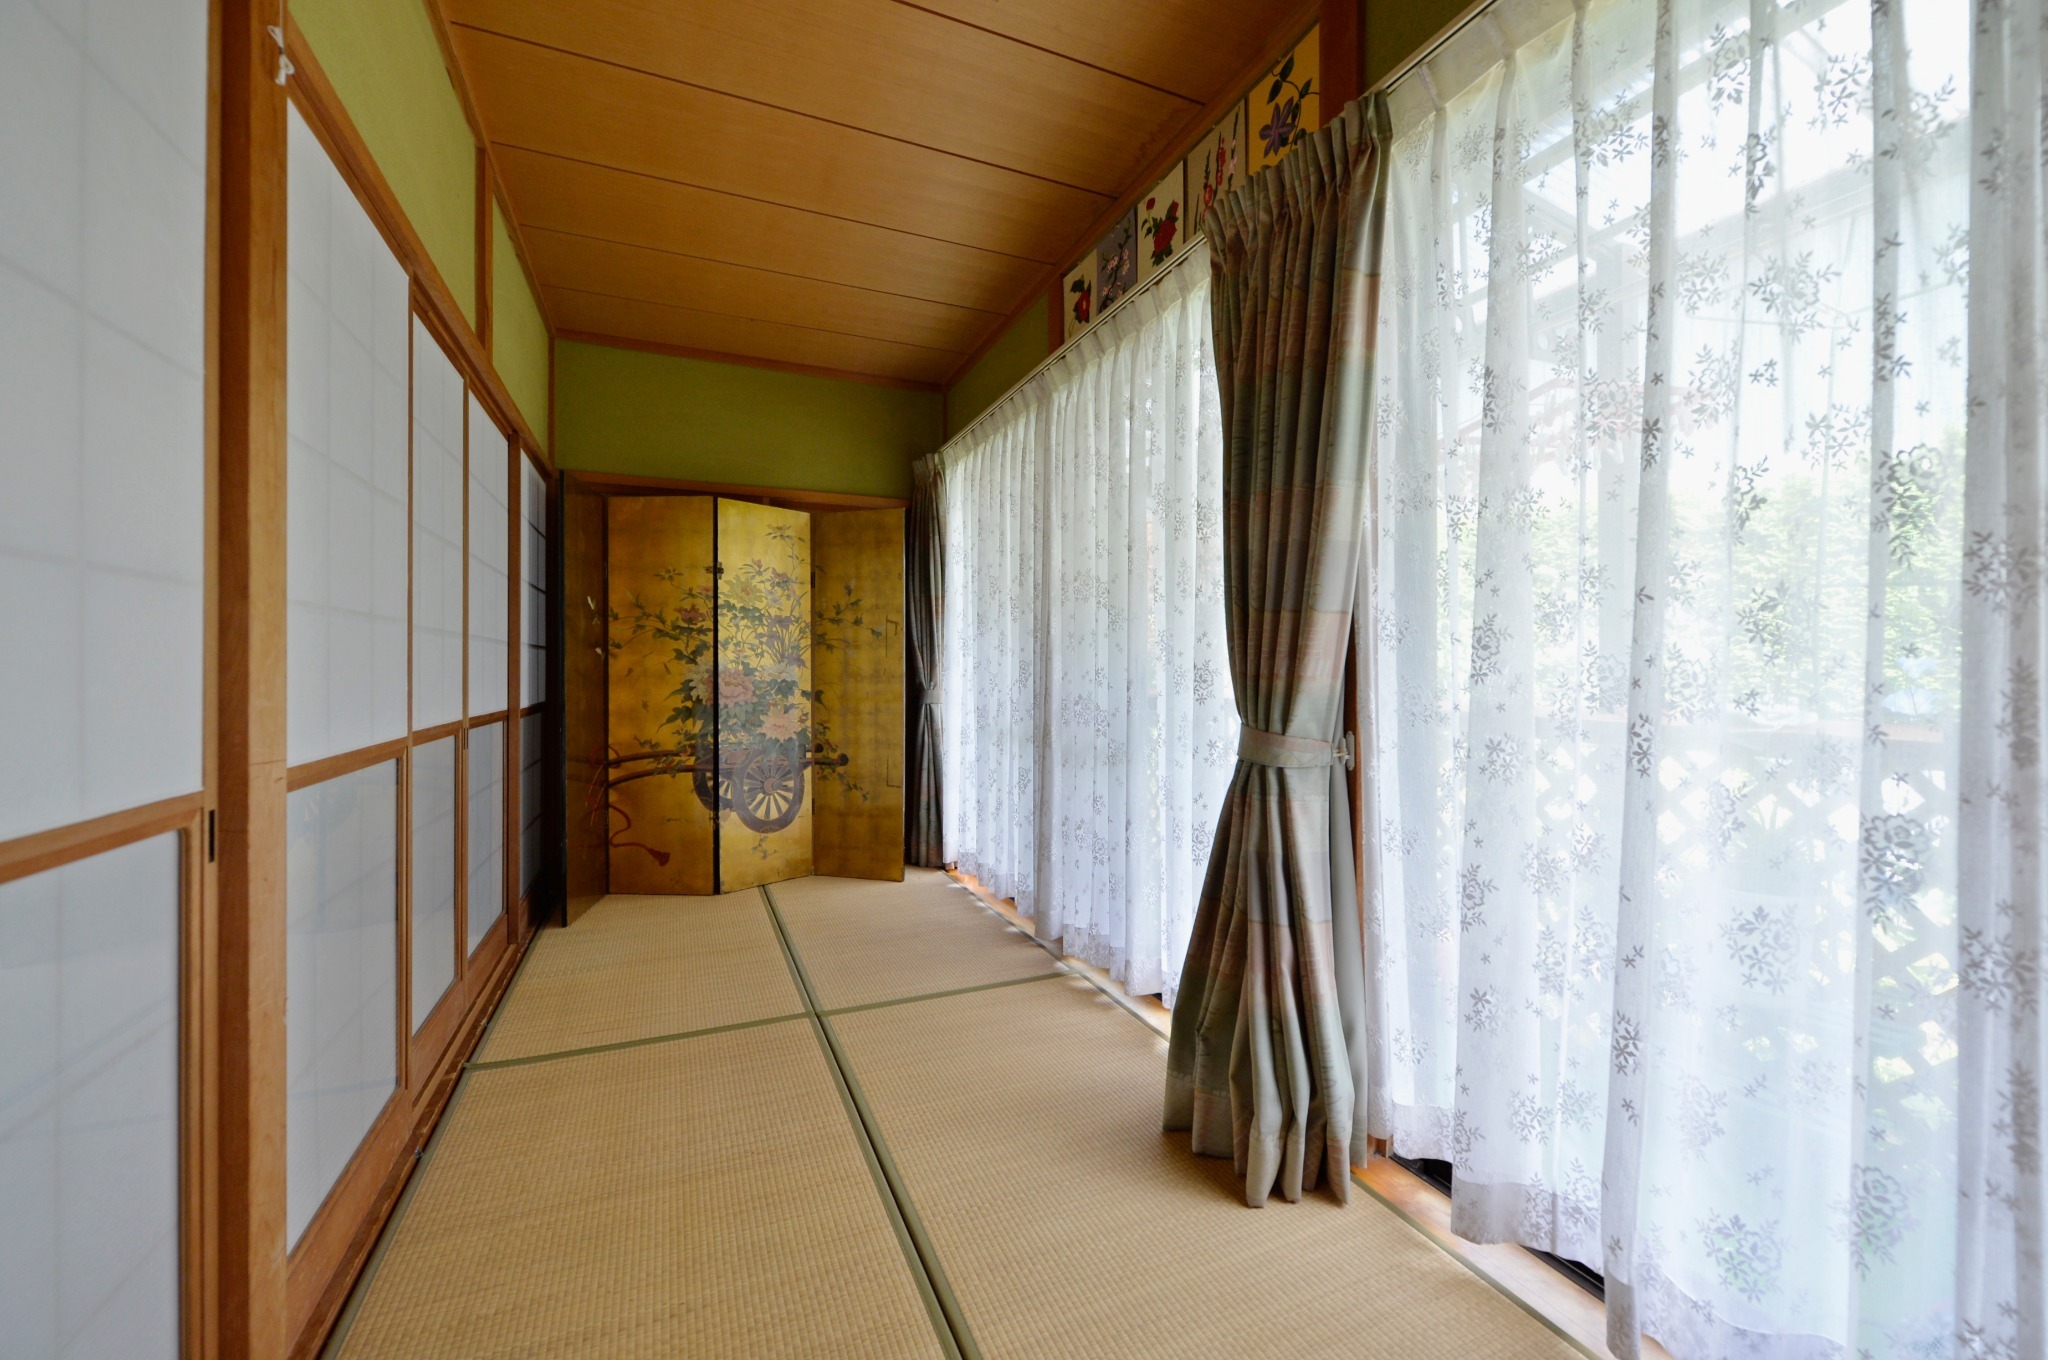 「ひだまりの家」豊かな自然、観光地至近、東屋でのBBQ、那須の民家でアットホームに